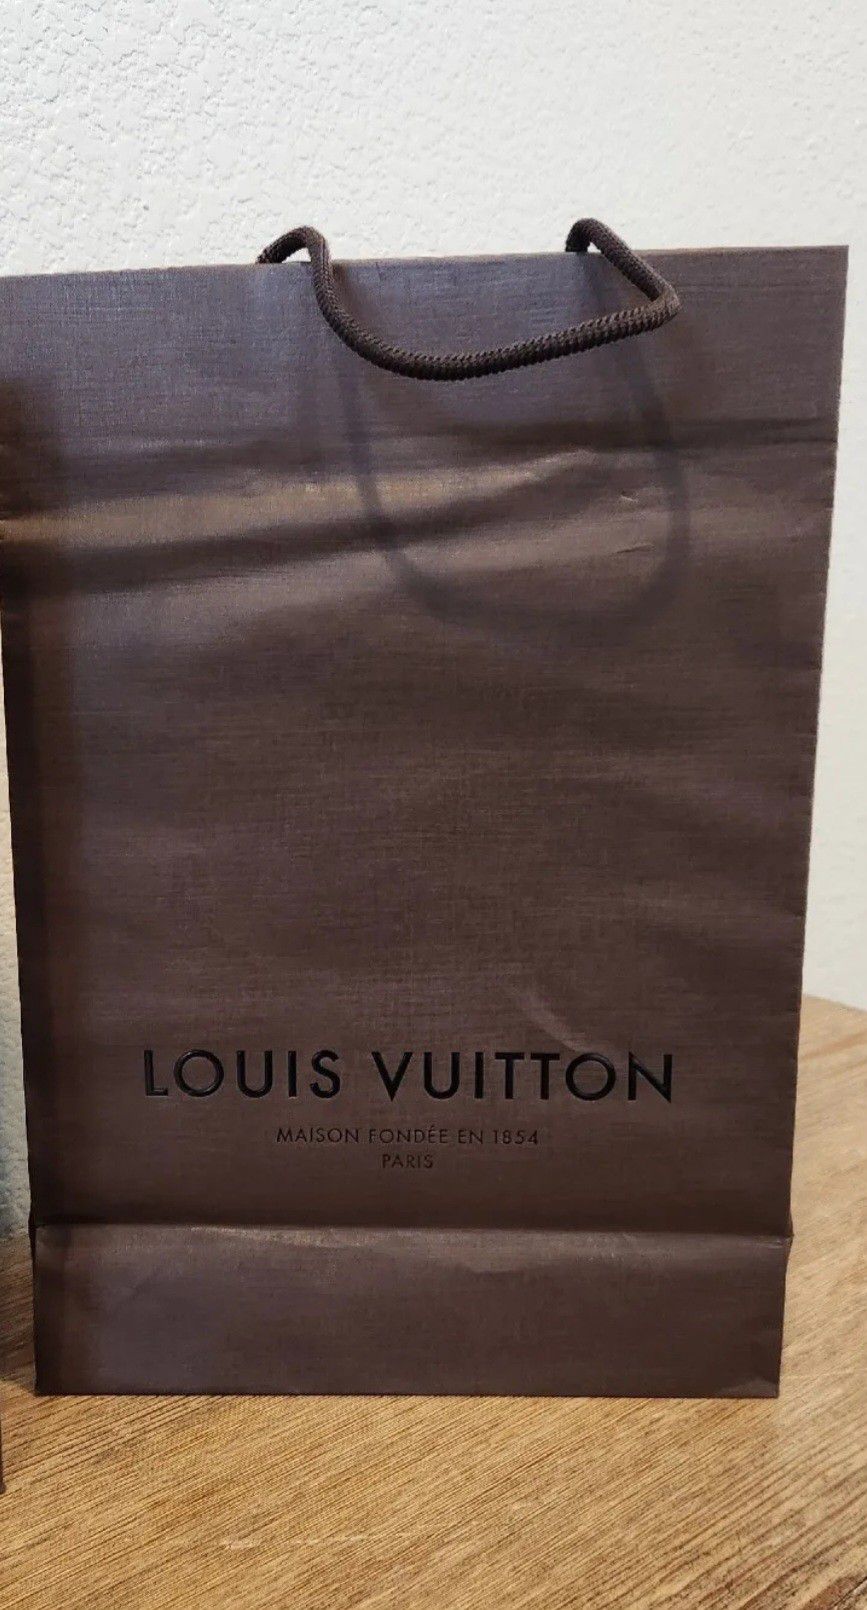 100% original Louis Vuitton dust bag for Sale in La Puente, CA - OfferUp